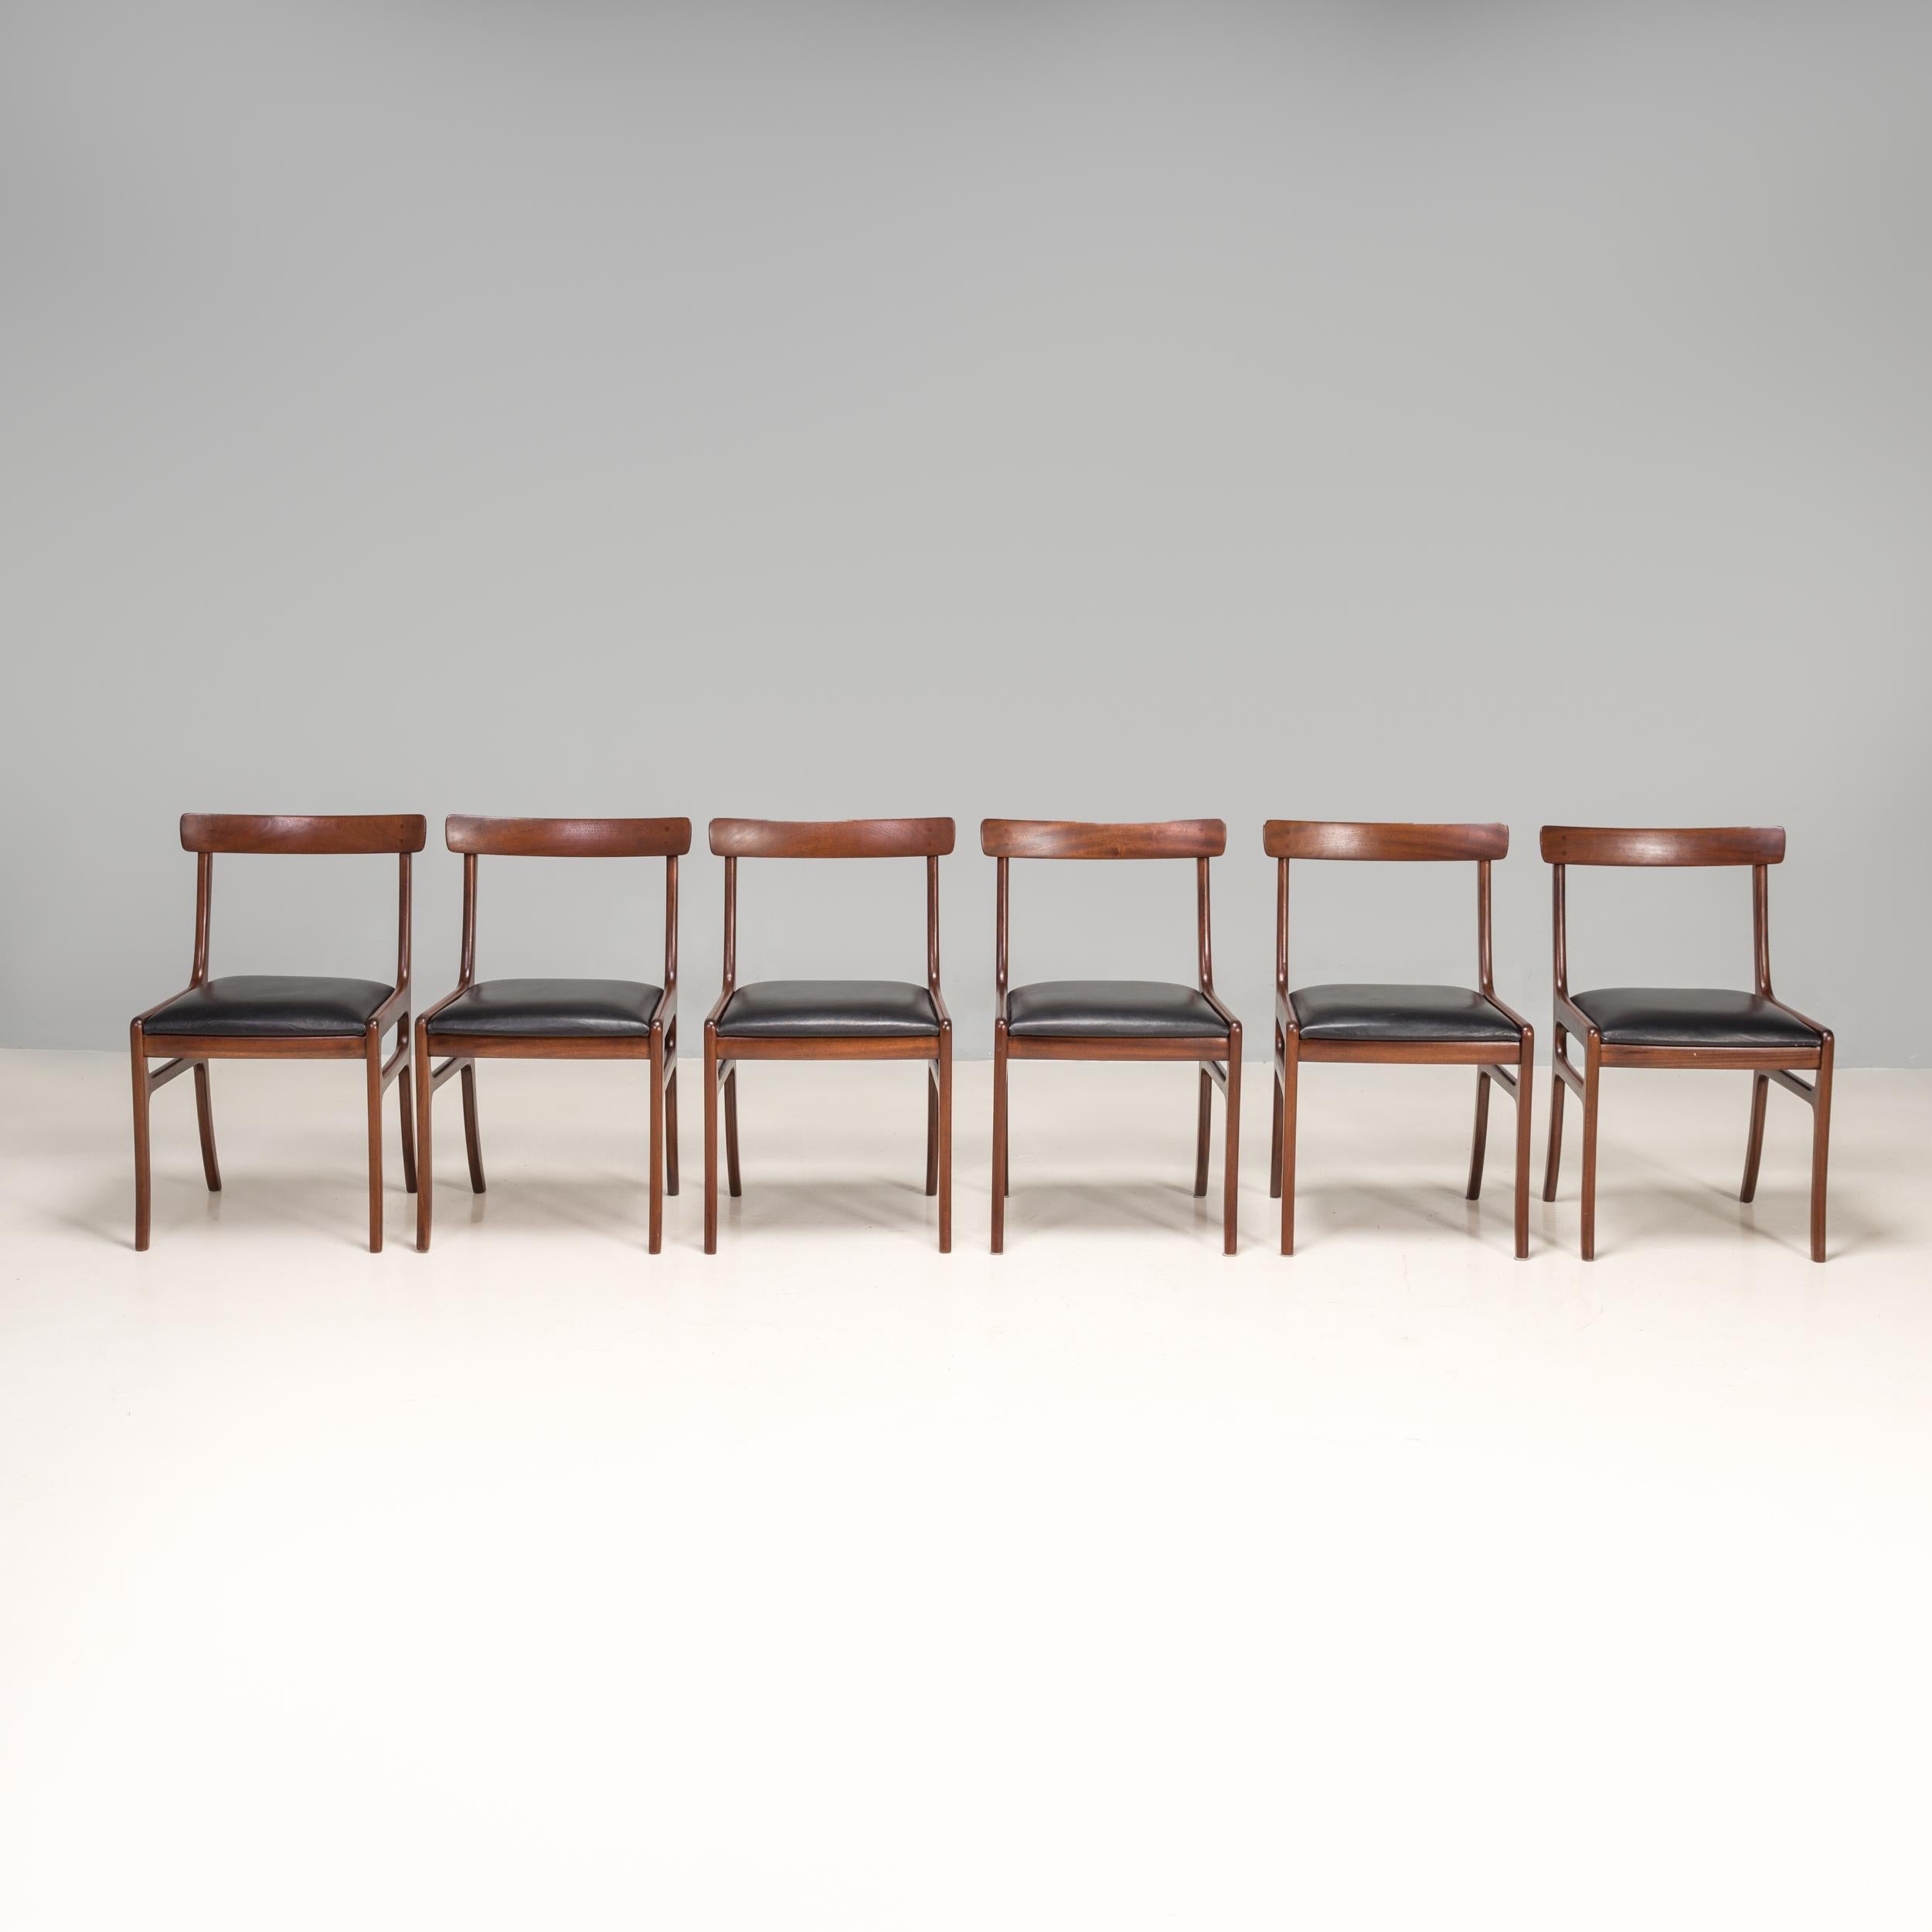 Architecte et créateur de meubles, Ole Wanscher a joué un rôle essentiel dans le développement du design danois du milieu du siècle.

Wanscher a travaillé avec Poul Jeppesens Møbelfabrik pour fabriquer ses designs des années 1950 jusqu'à la fin de